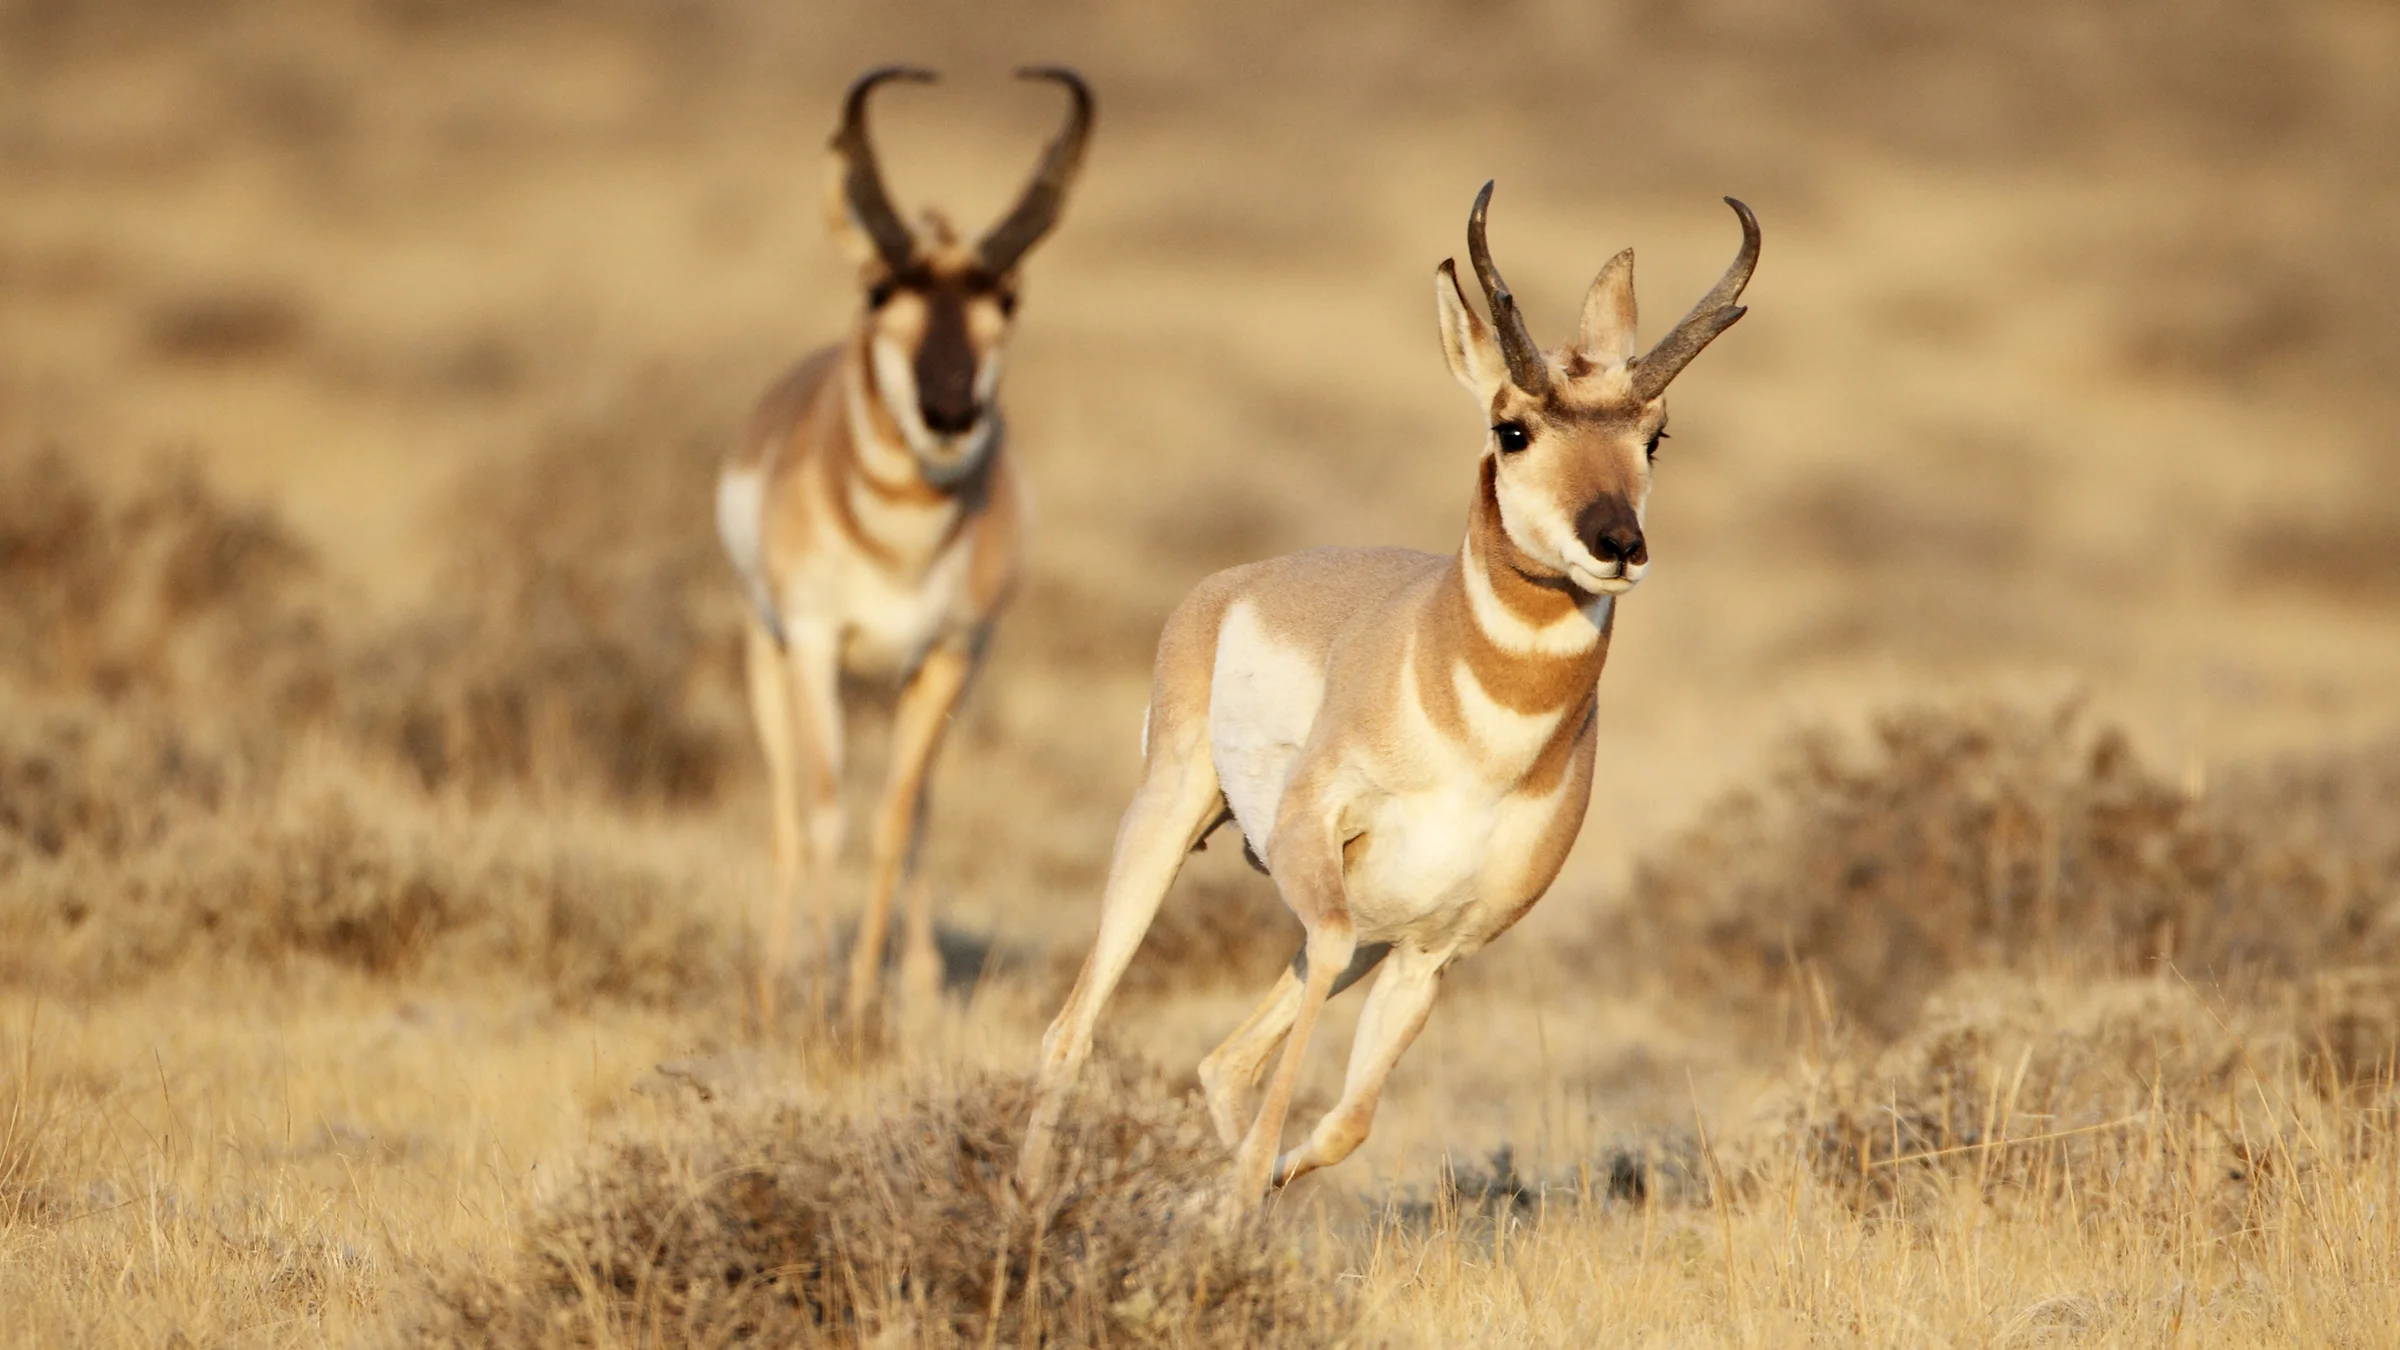 Antelopes’ Defense Mechanisms